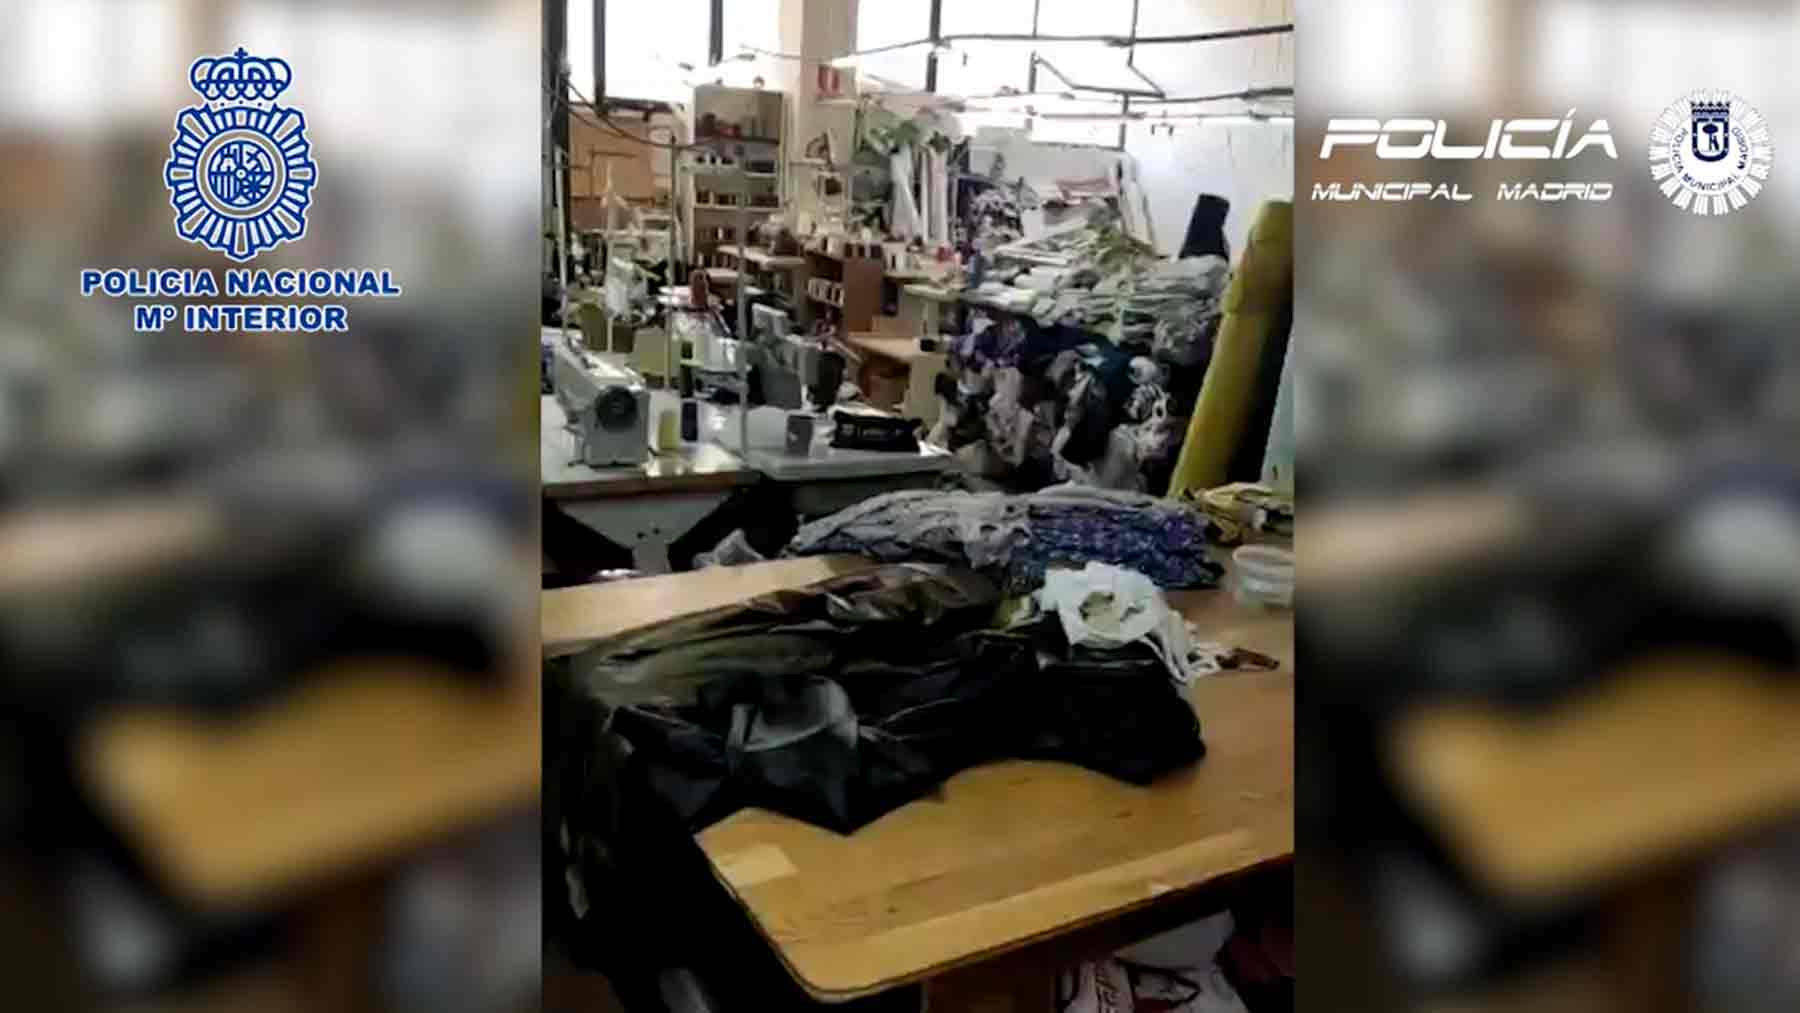 Policía rescata a una menor de 5 años en un taller textil ilegal en Madrid